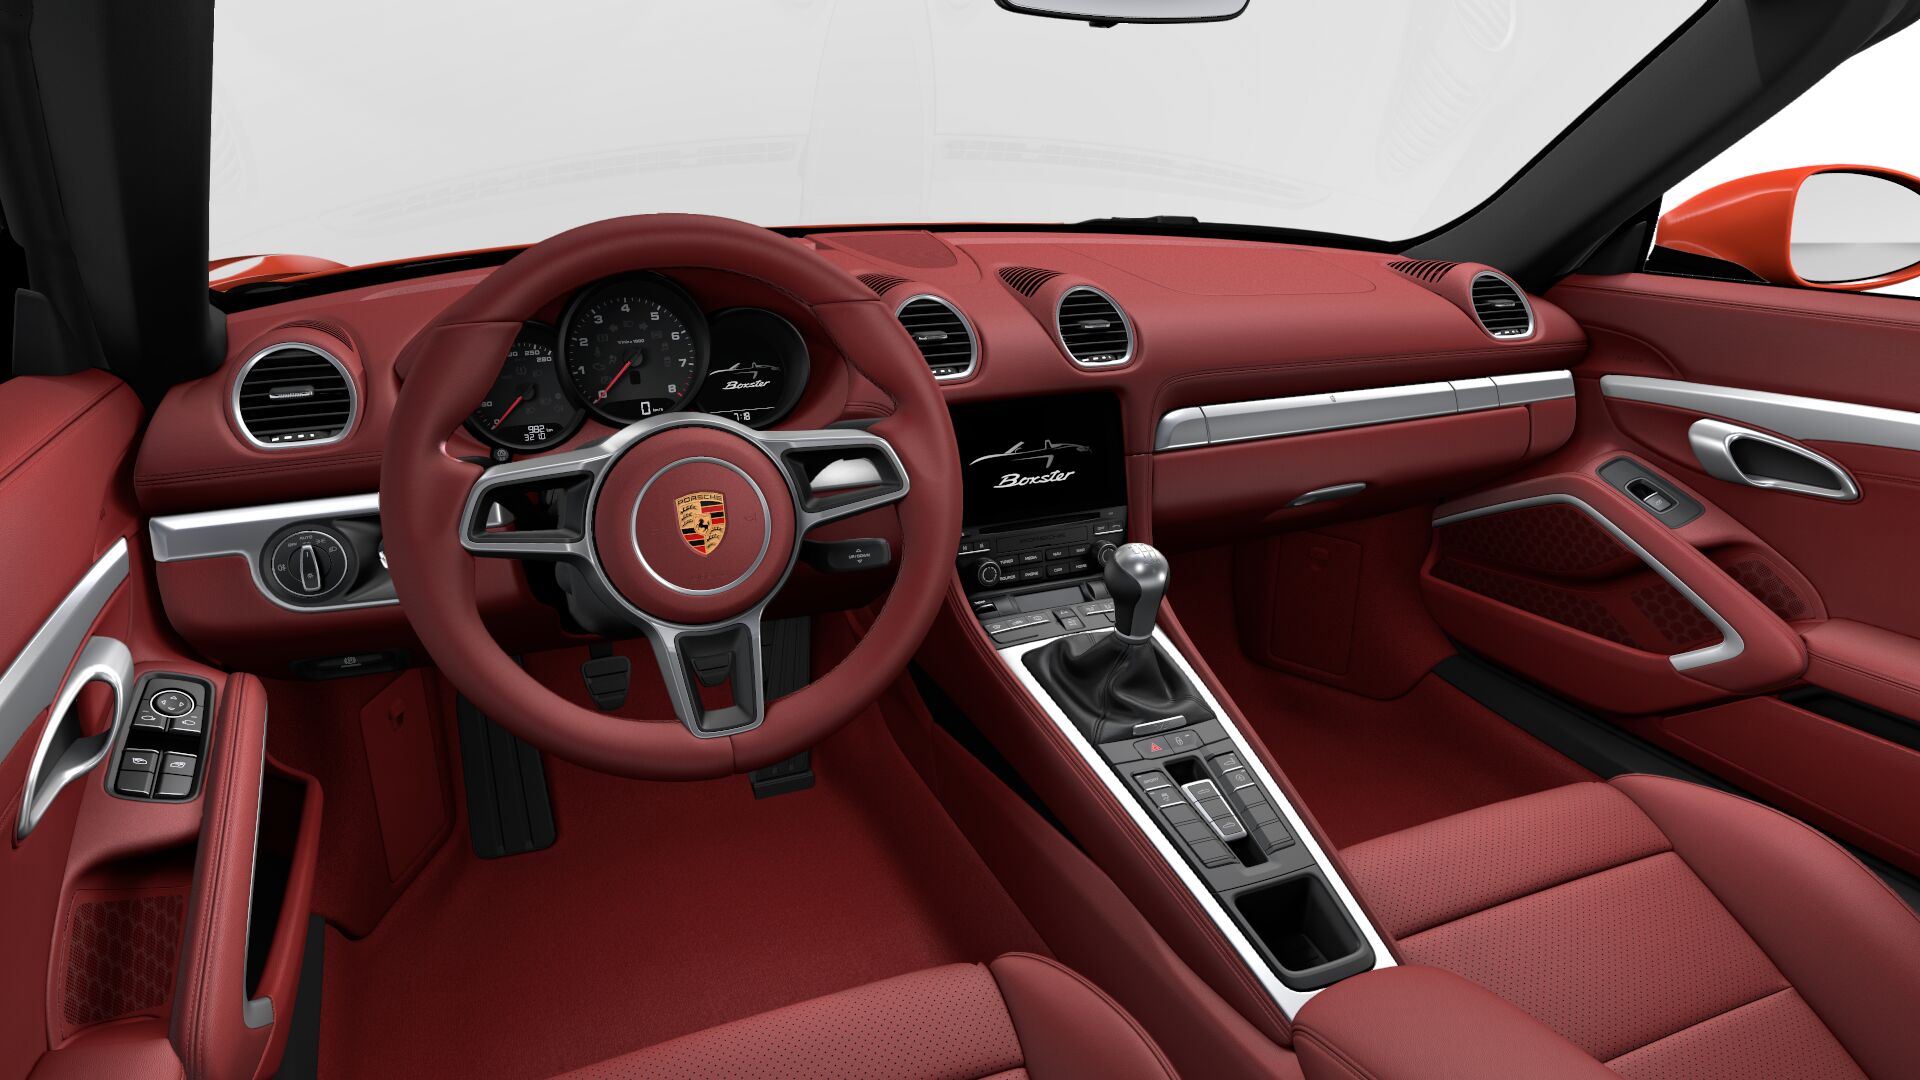 Porsche 718 Boxster S Interior Image Gallery Pictures Photos